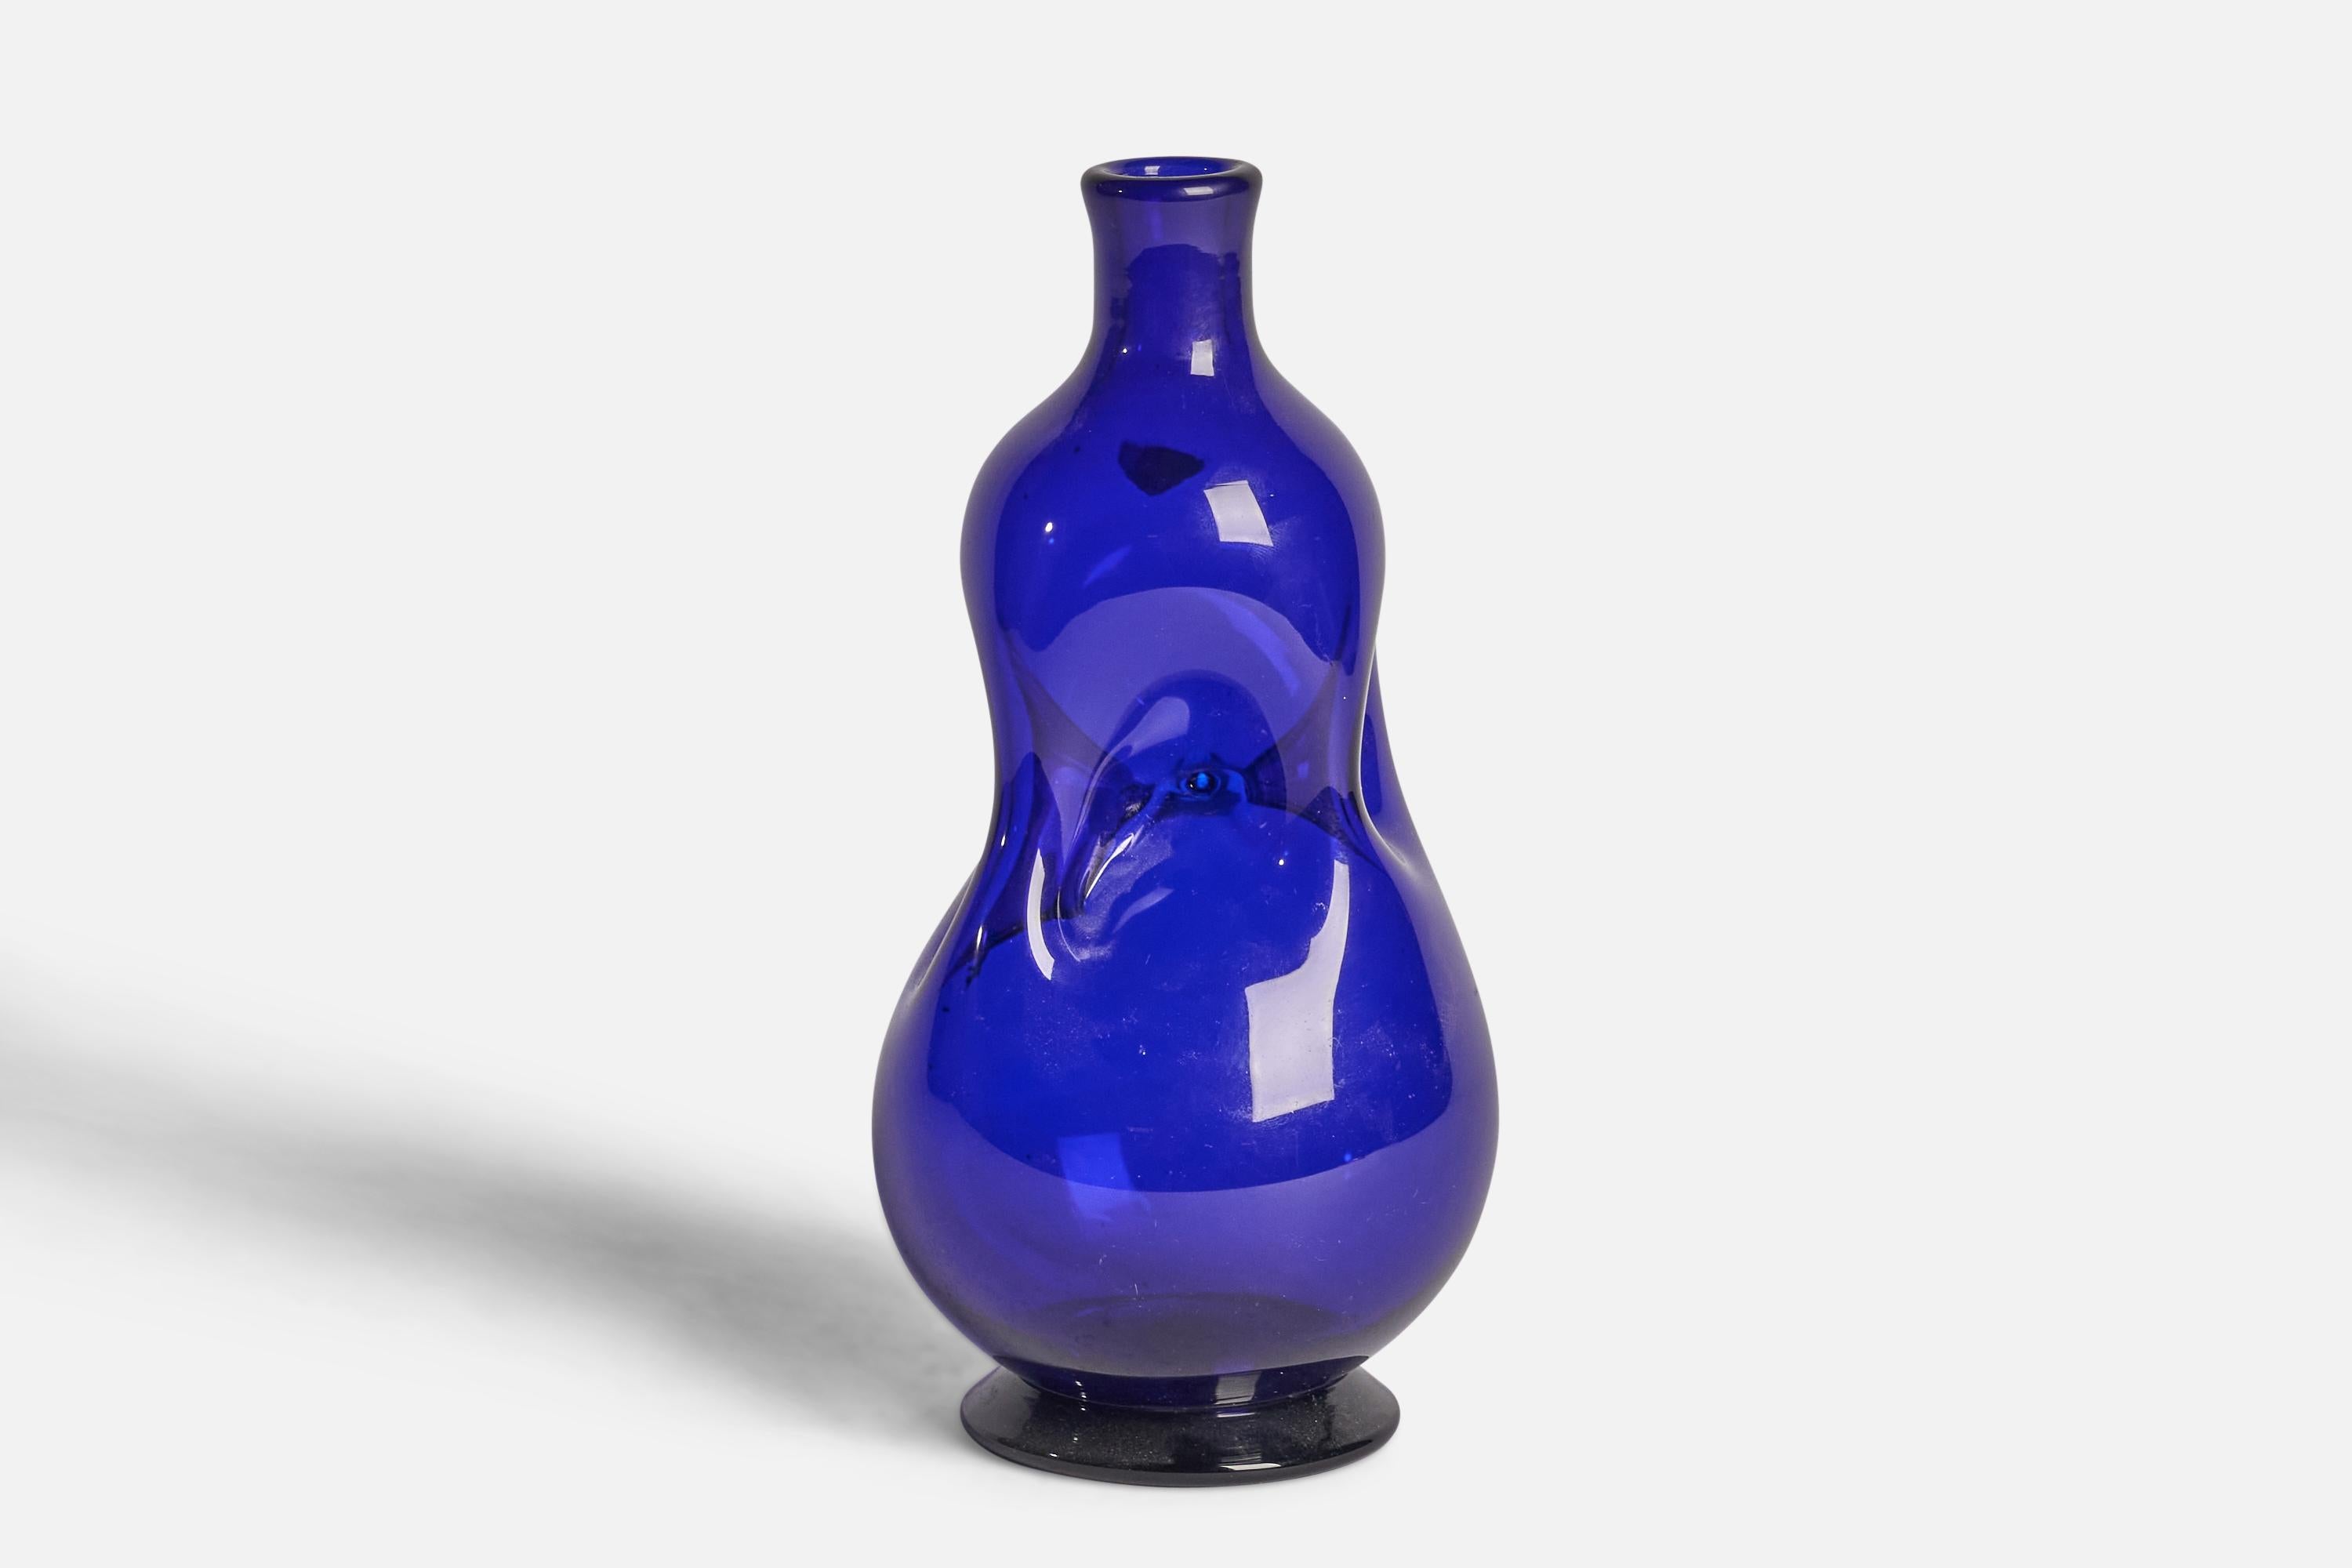 A freeform blue-coloured glass vase designed by Hugo Gehlin and produced by Gulaskruf, Sweden, c. 1940s.